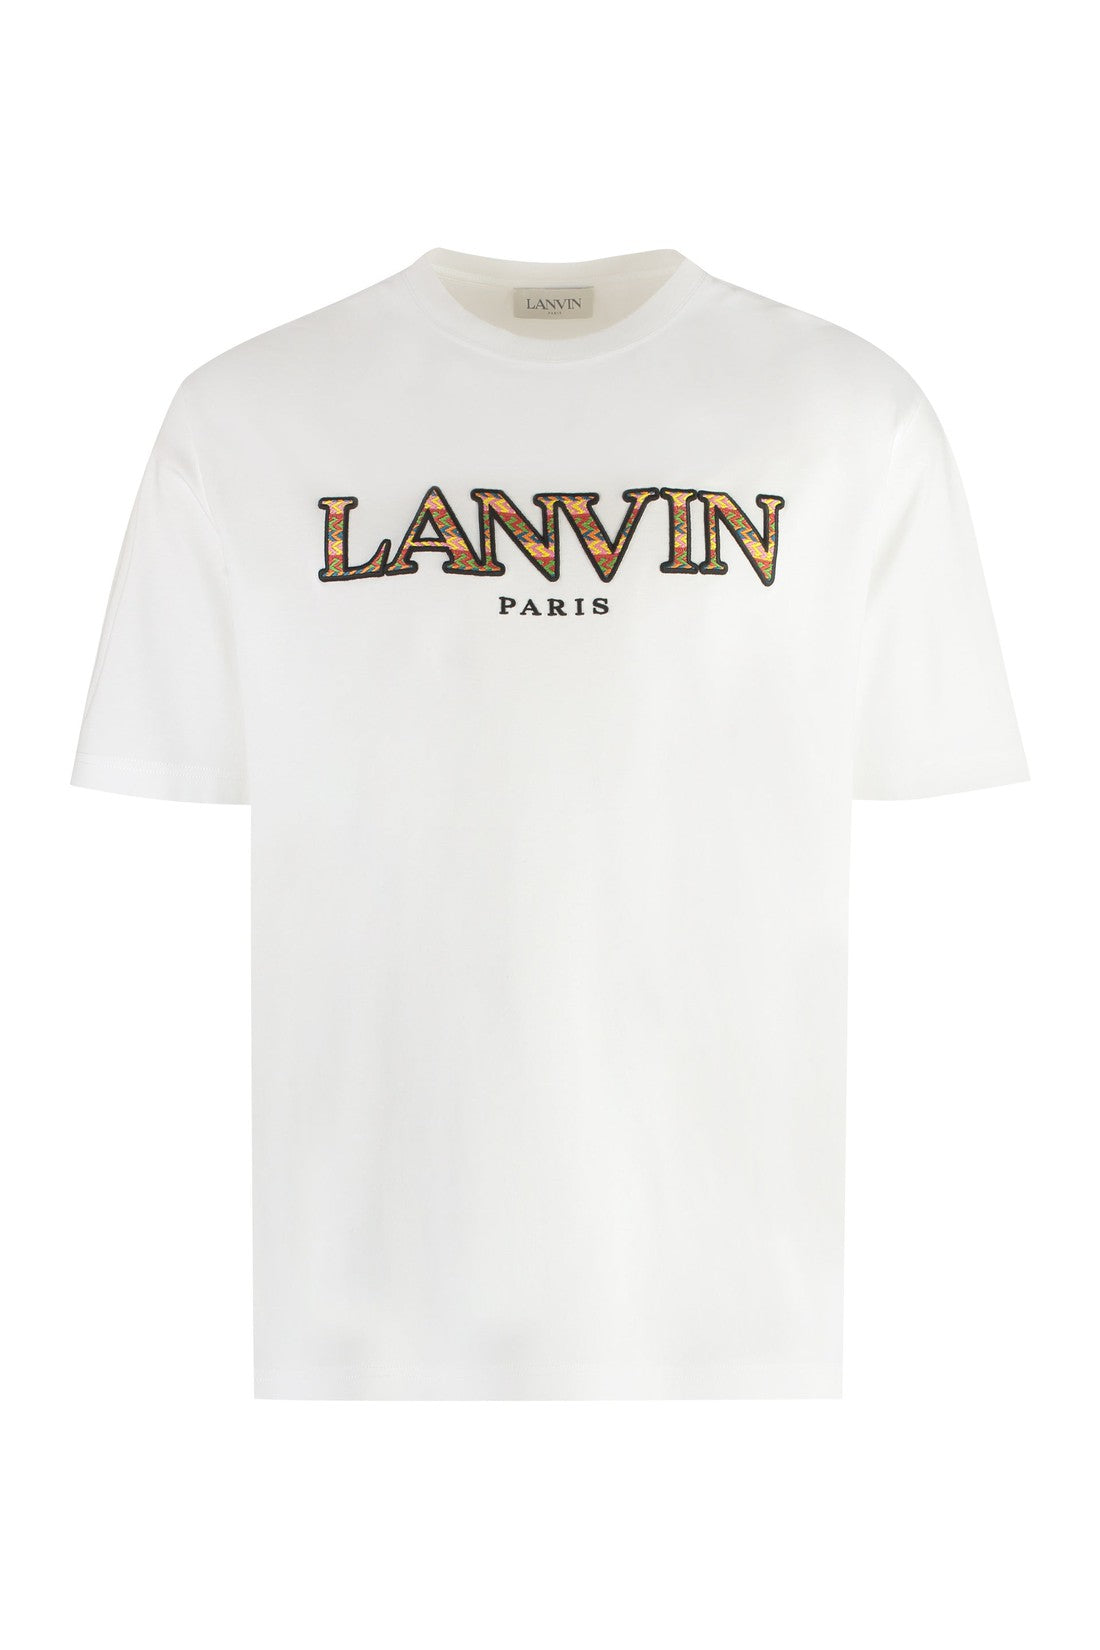 Lanvin-OUTLET-SALE-Cotton crew-neck T-shirt-ARCHIVIST